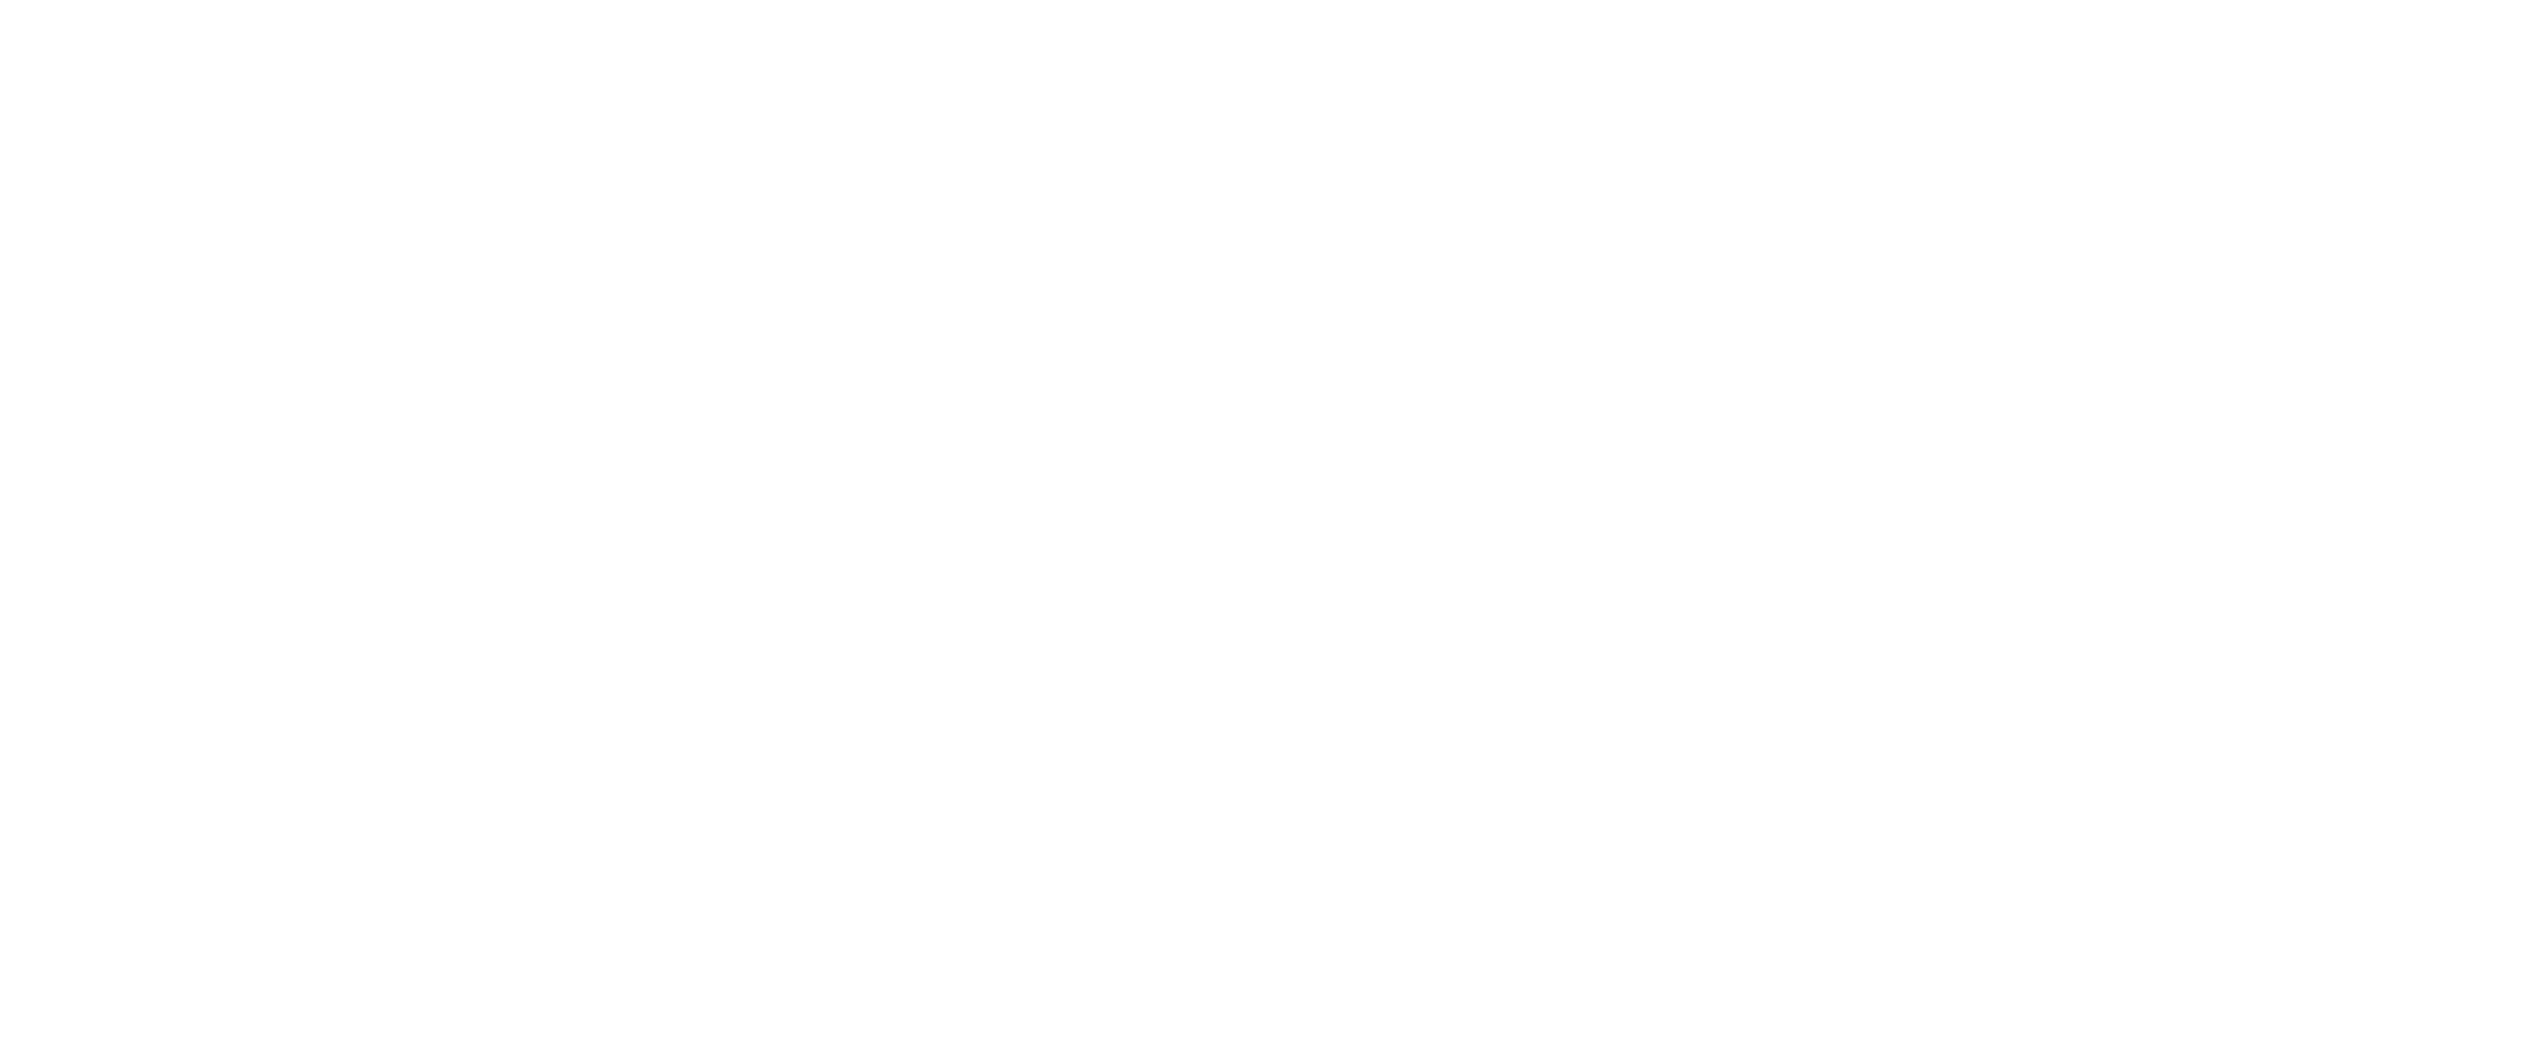 Jackson's logo